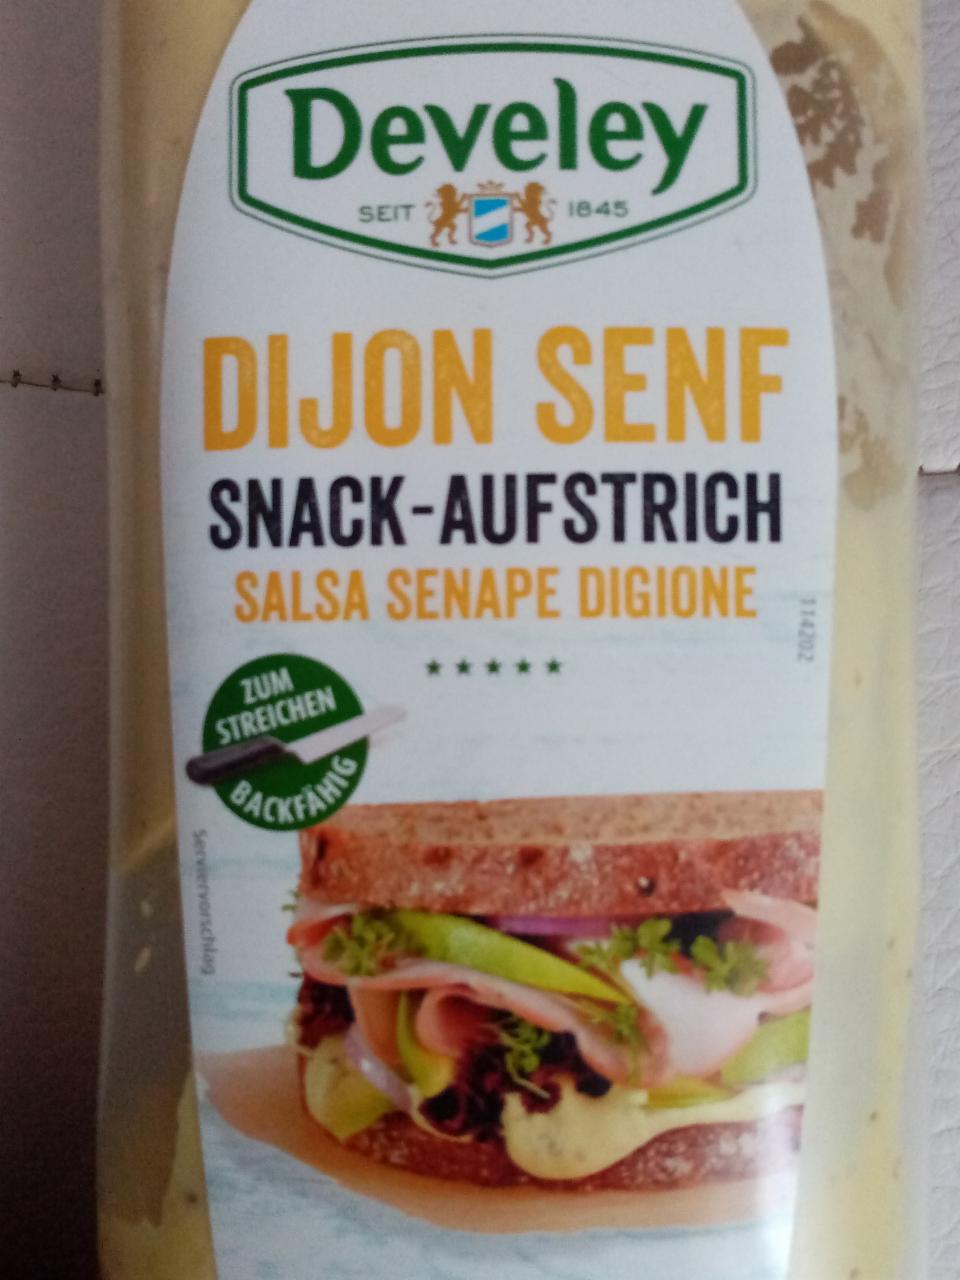 Fotografie - Dijon Senf Snack Aufstrich salsa senape digione Develey